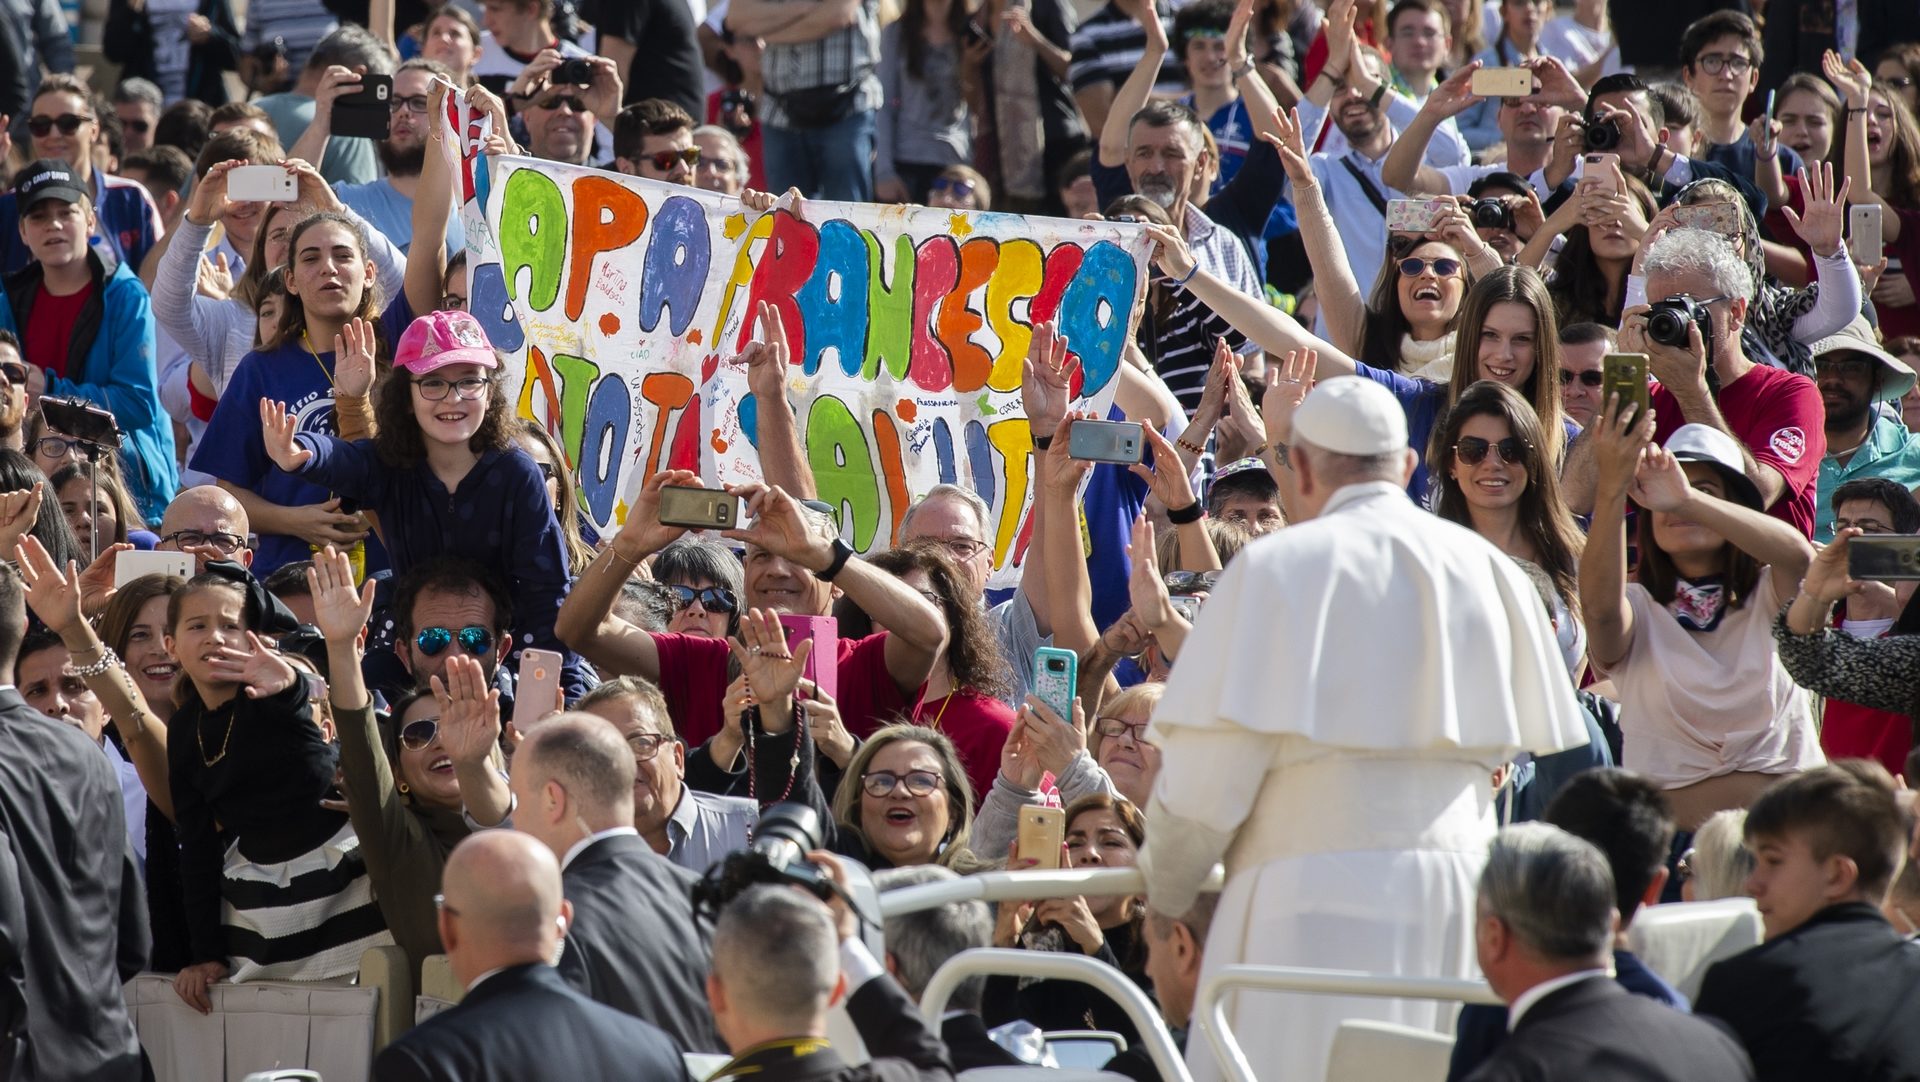 Le pape François arrive à l'audience Place Saint-Pierre | © Antoine Mekary I.Media